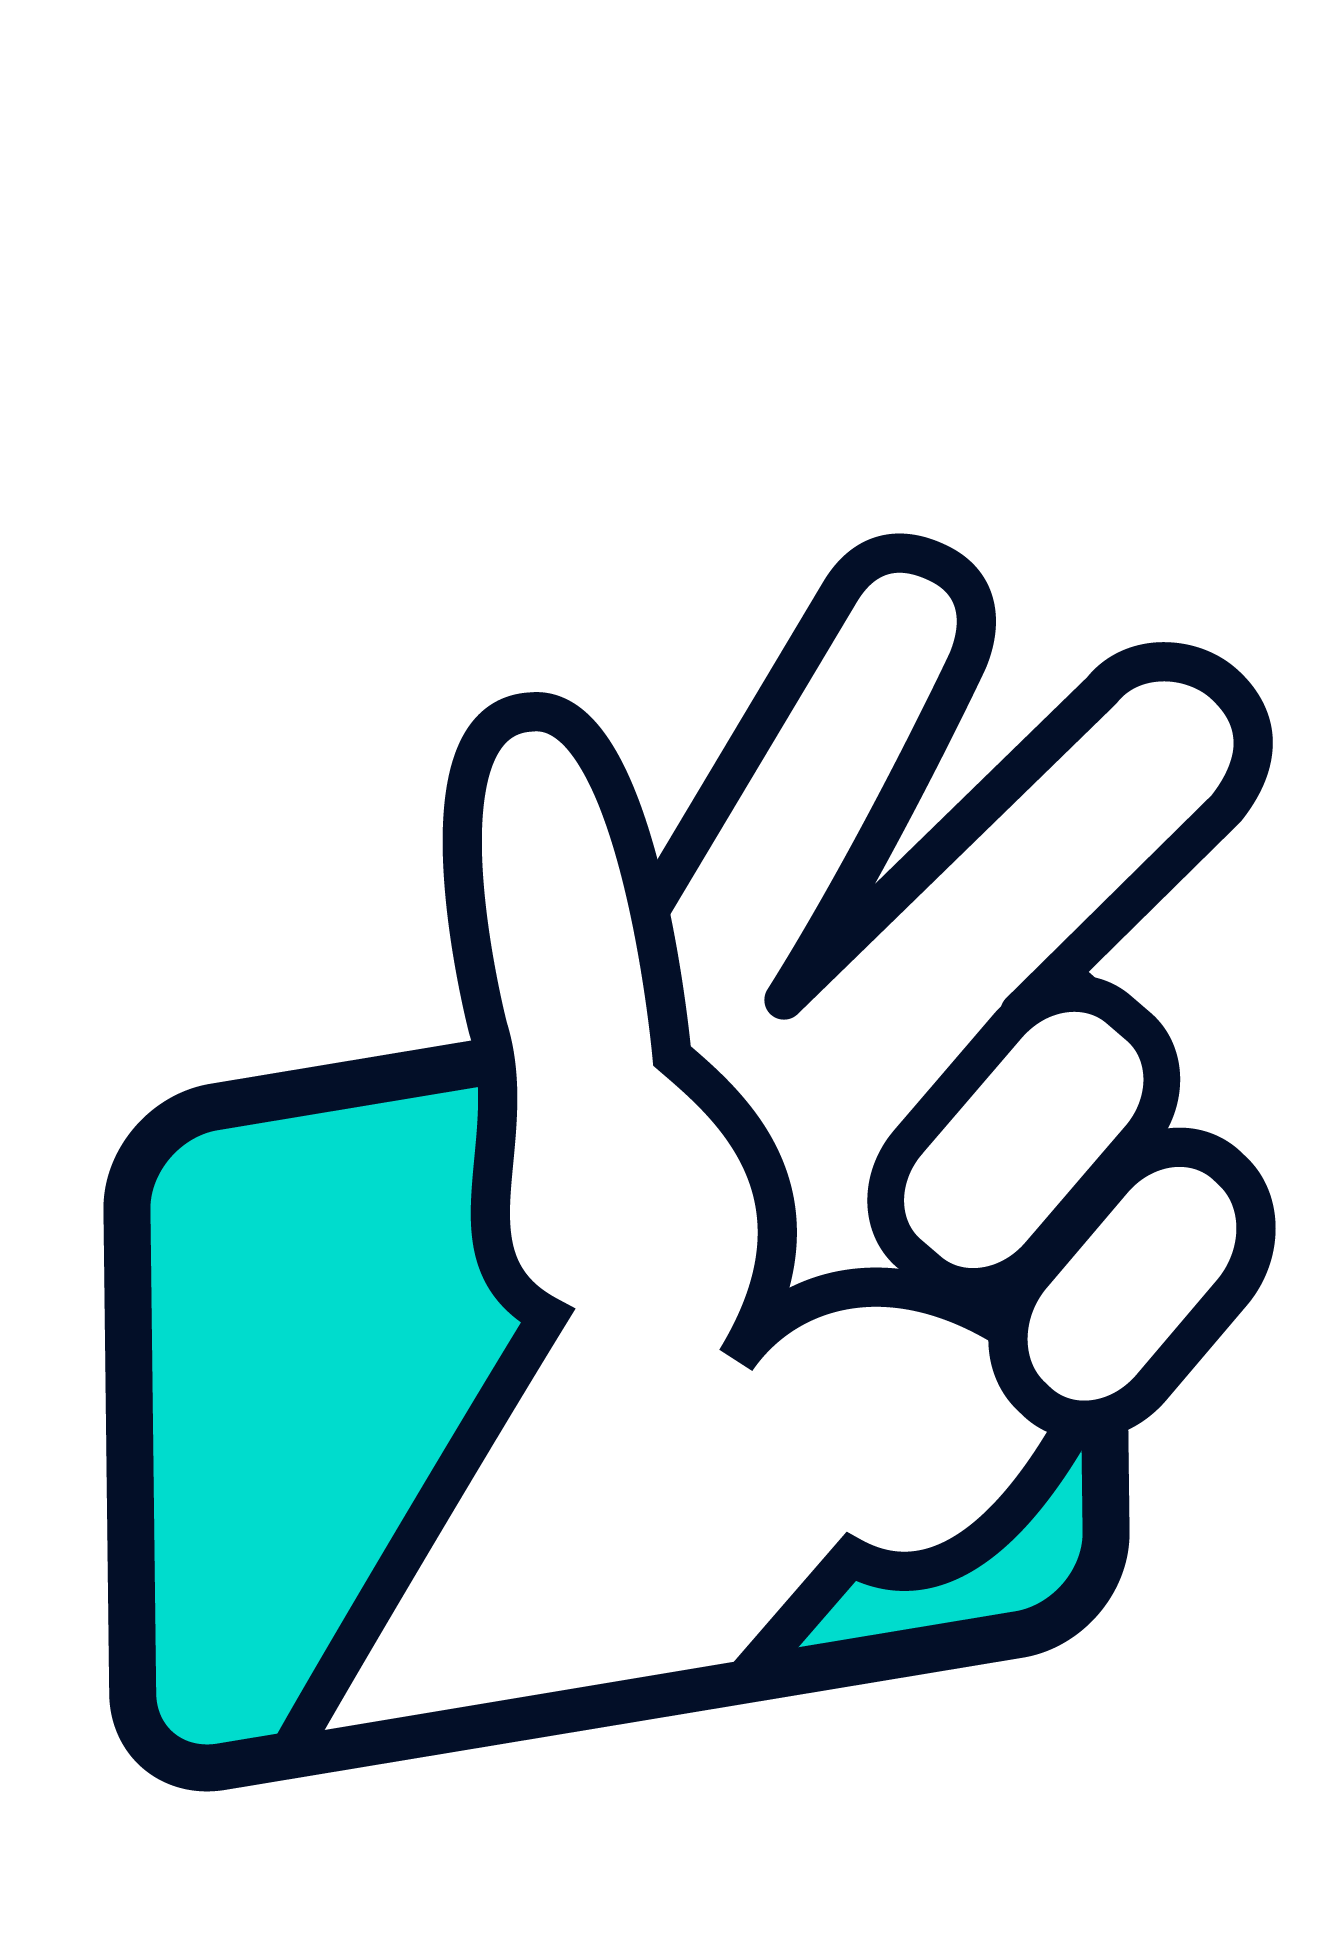 Illustration einer Hand, die das Zeichen für "3" macht.